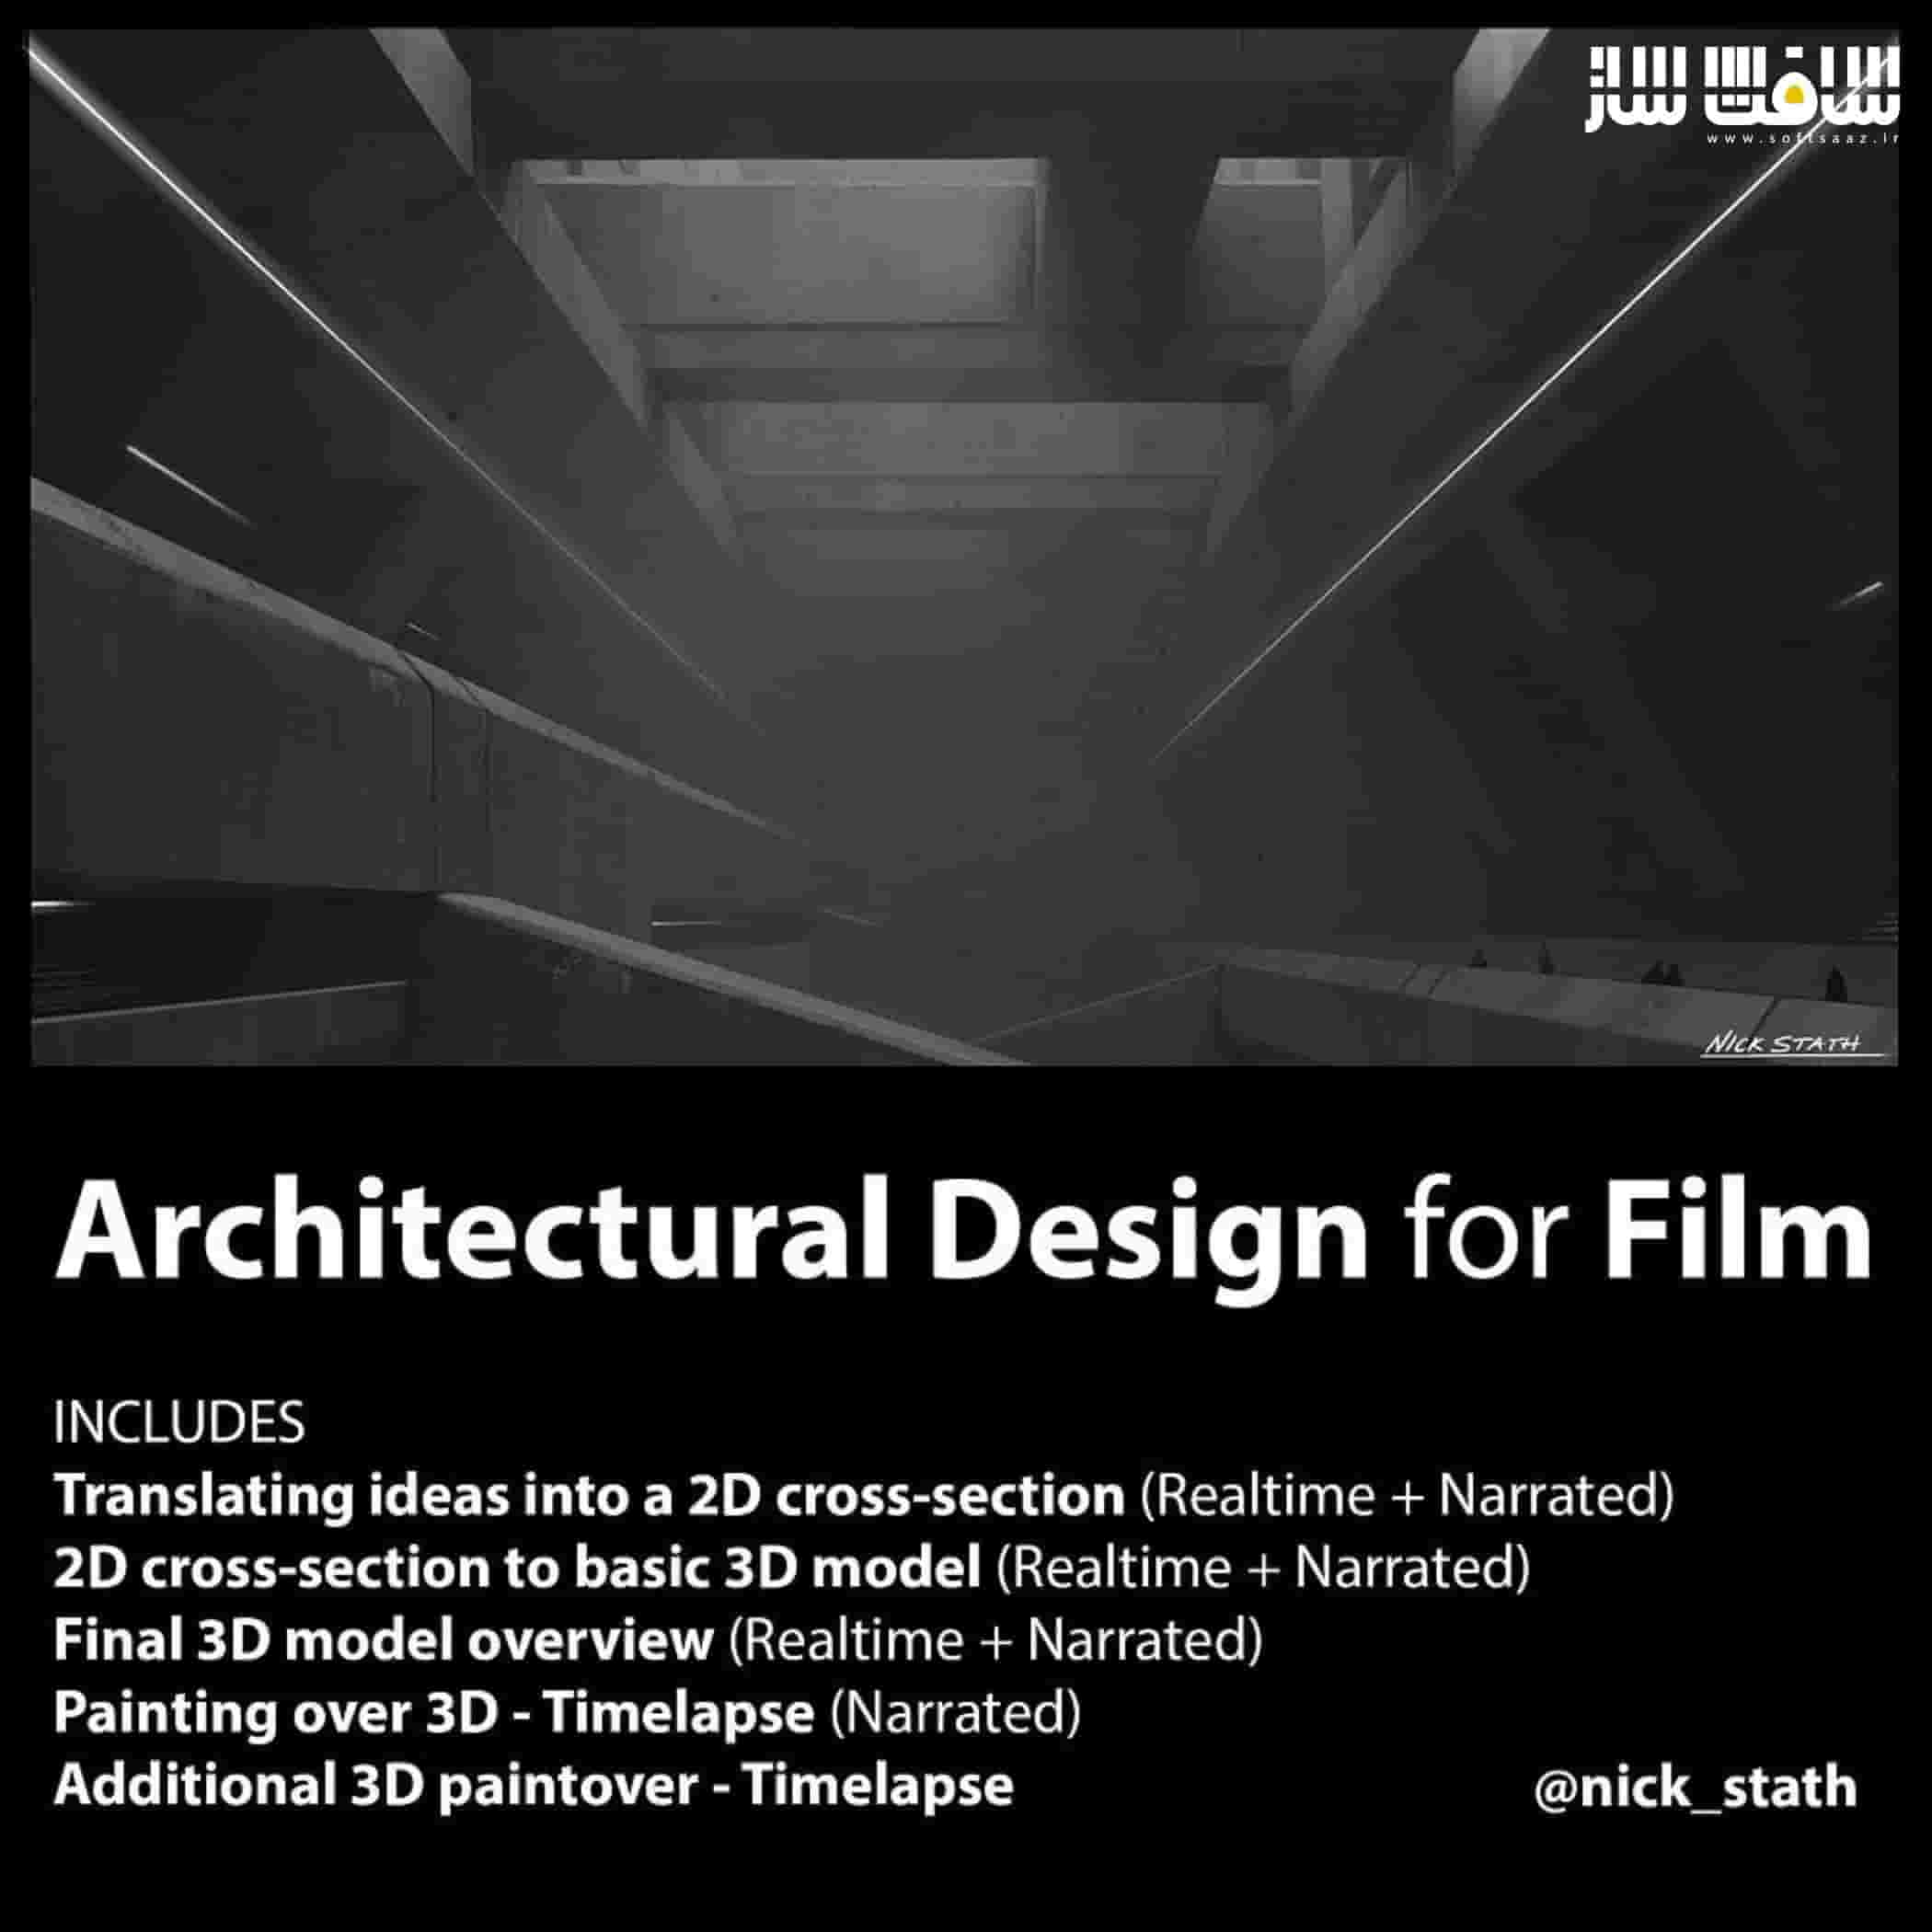 آموزش طراحی معماری برای فیلم از Nick Stath